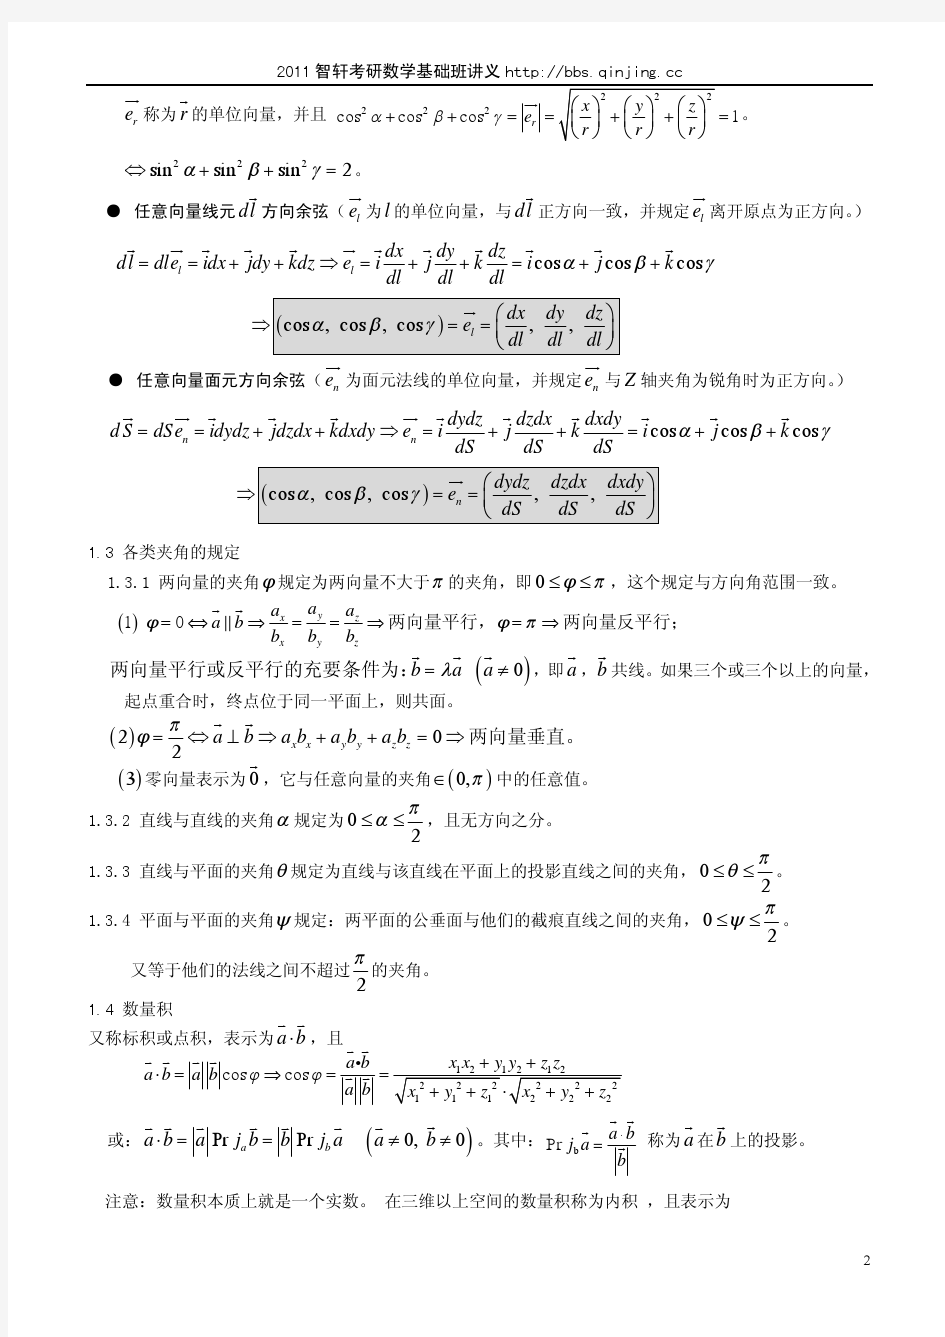 2011智轩高数基础导学讲义--第六章 向量代数与空解几何